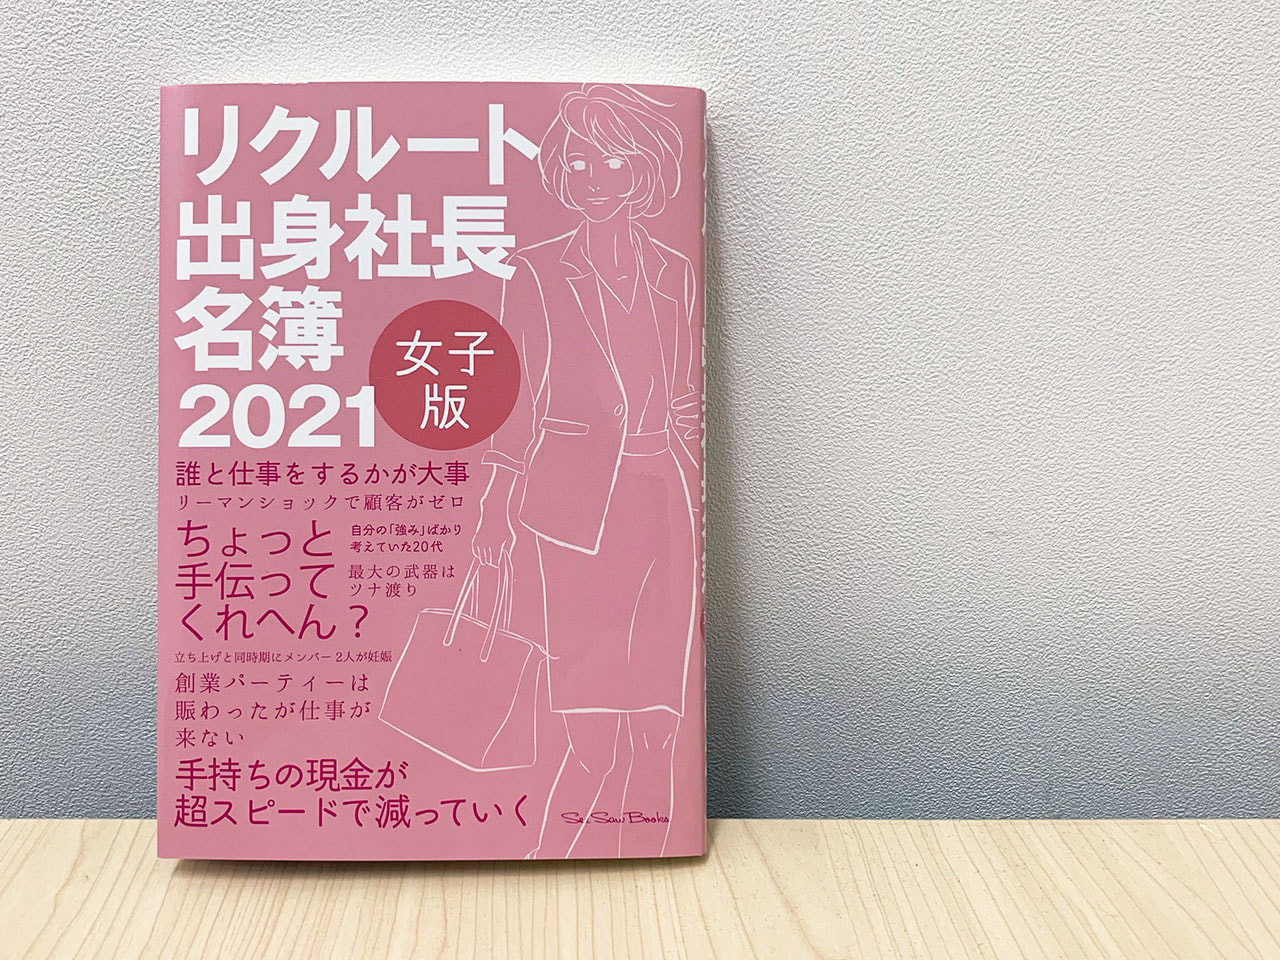 斉藤由美子が『リクルート出身社長名簿～女子版2021』に掲載されました。